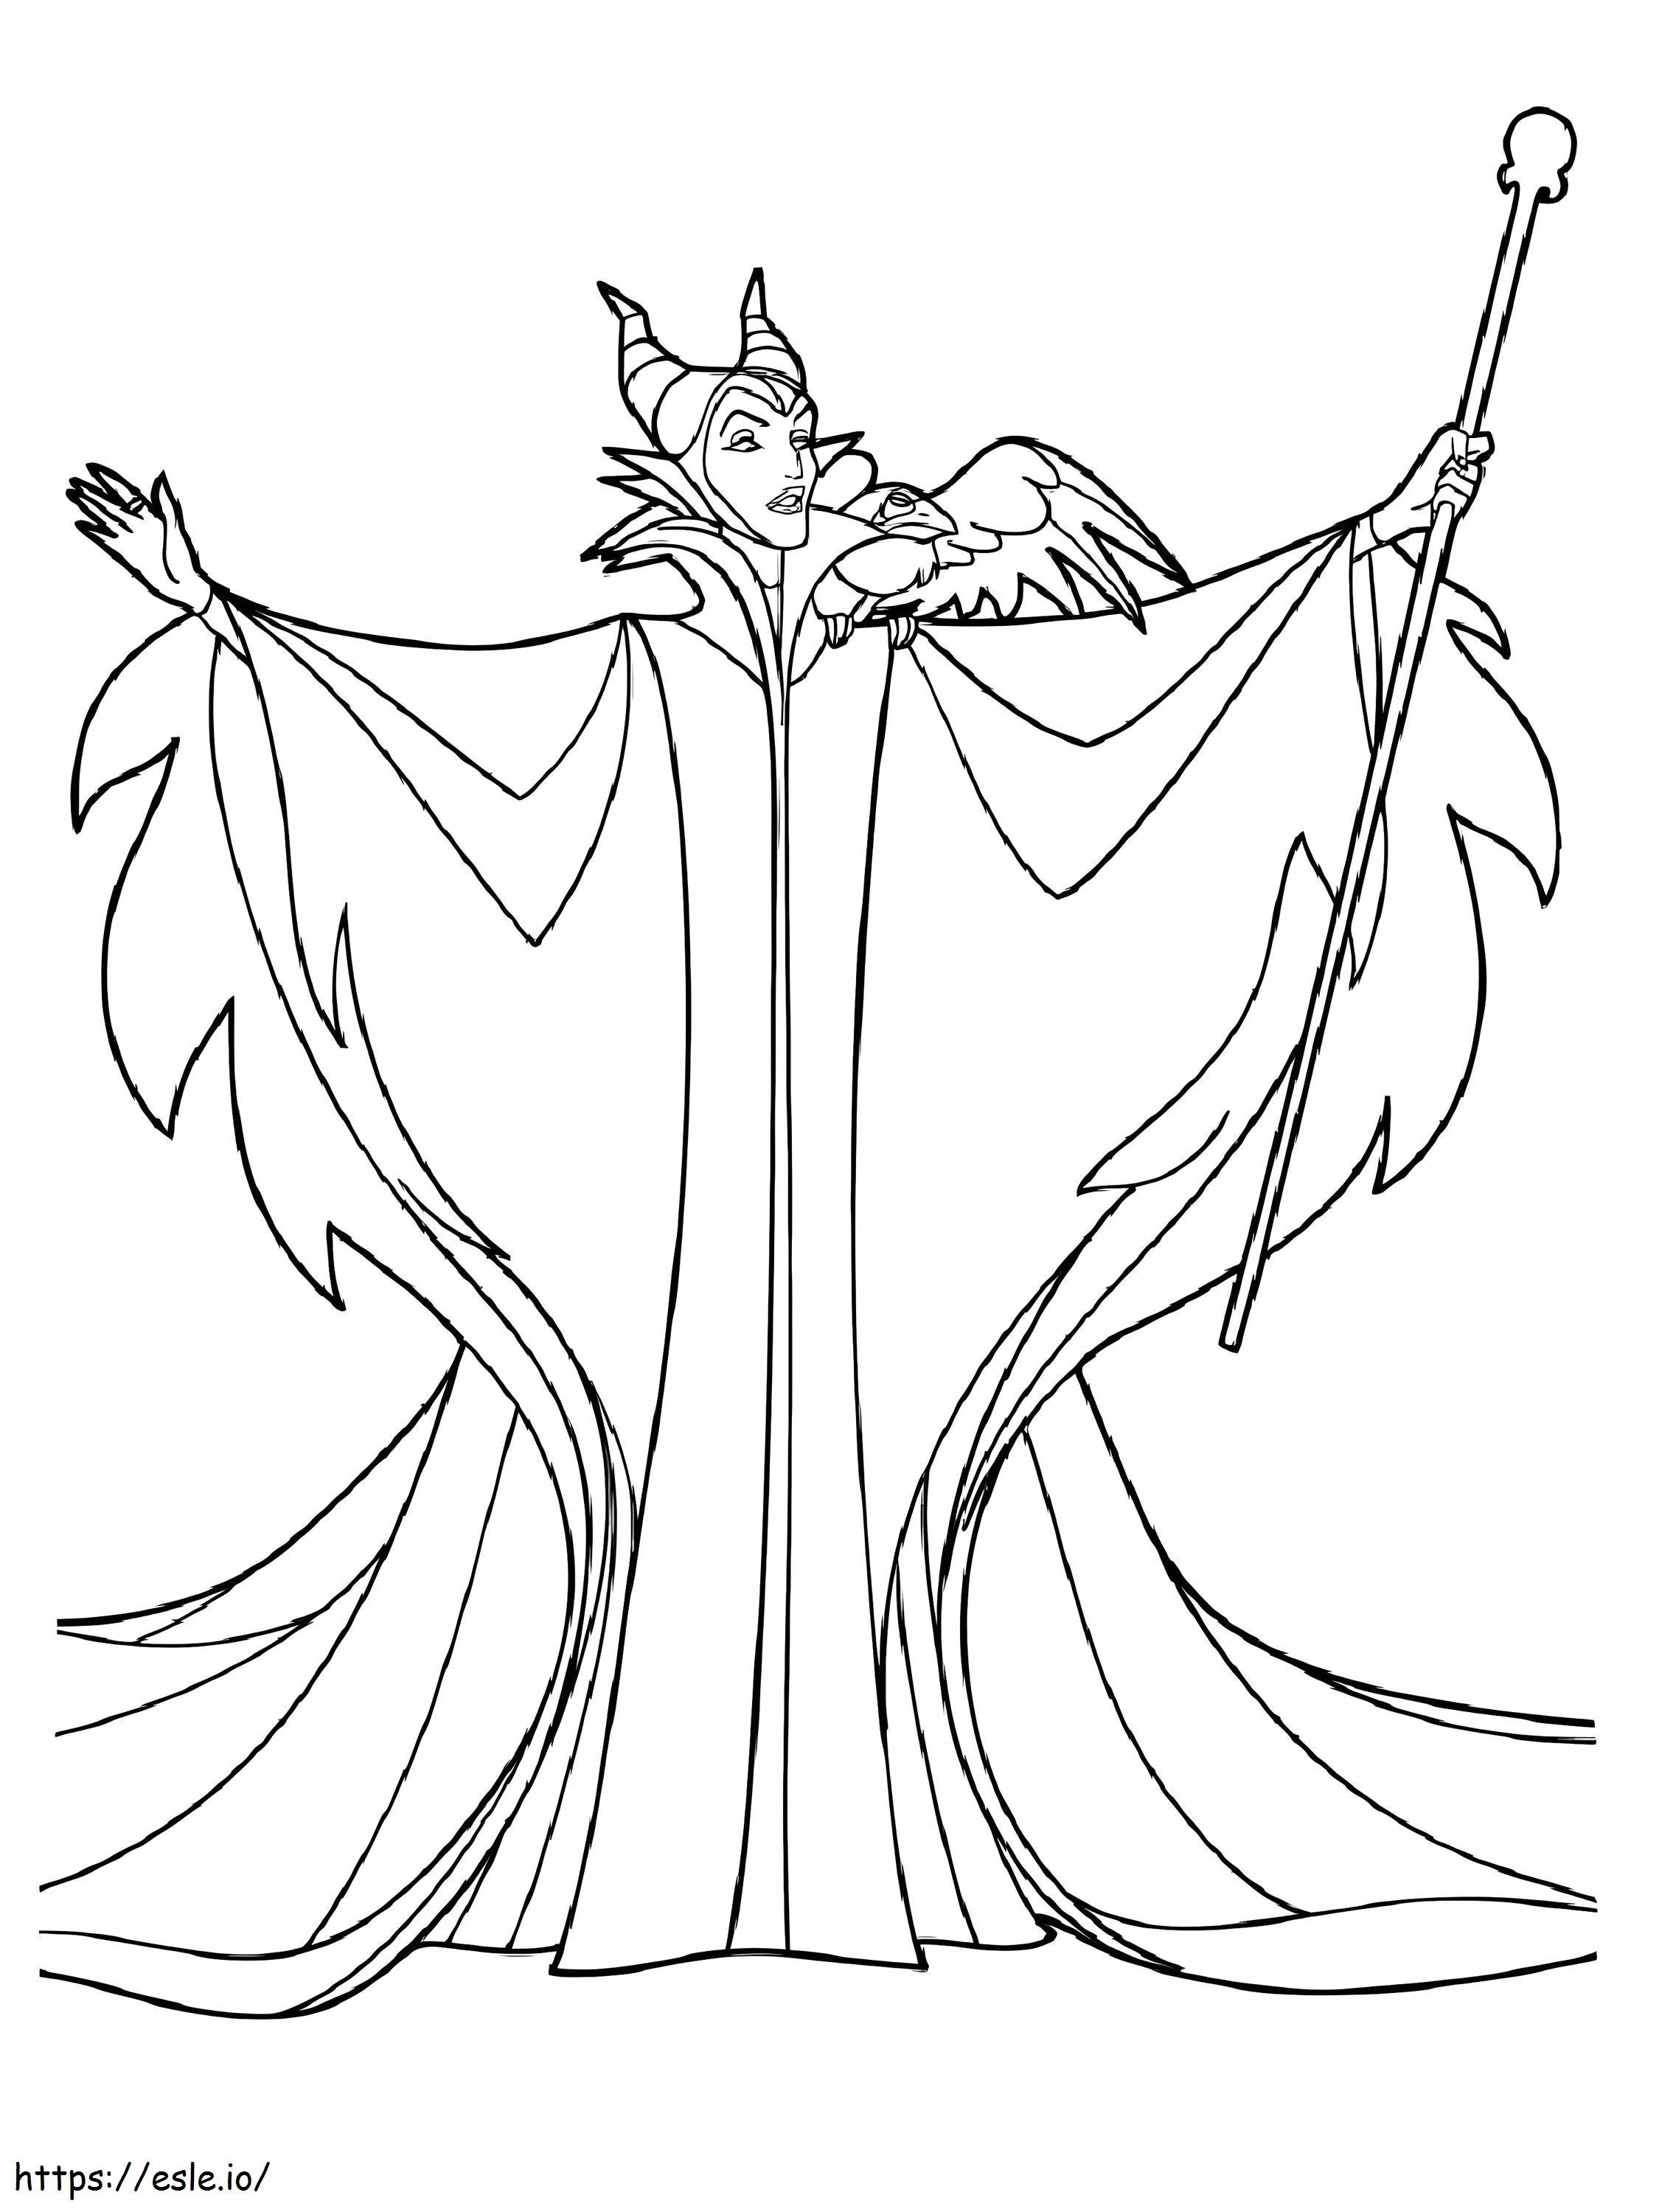 Maleficent aus Cartoon ausmalbilder